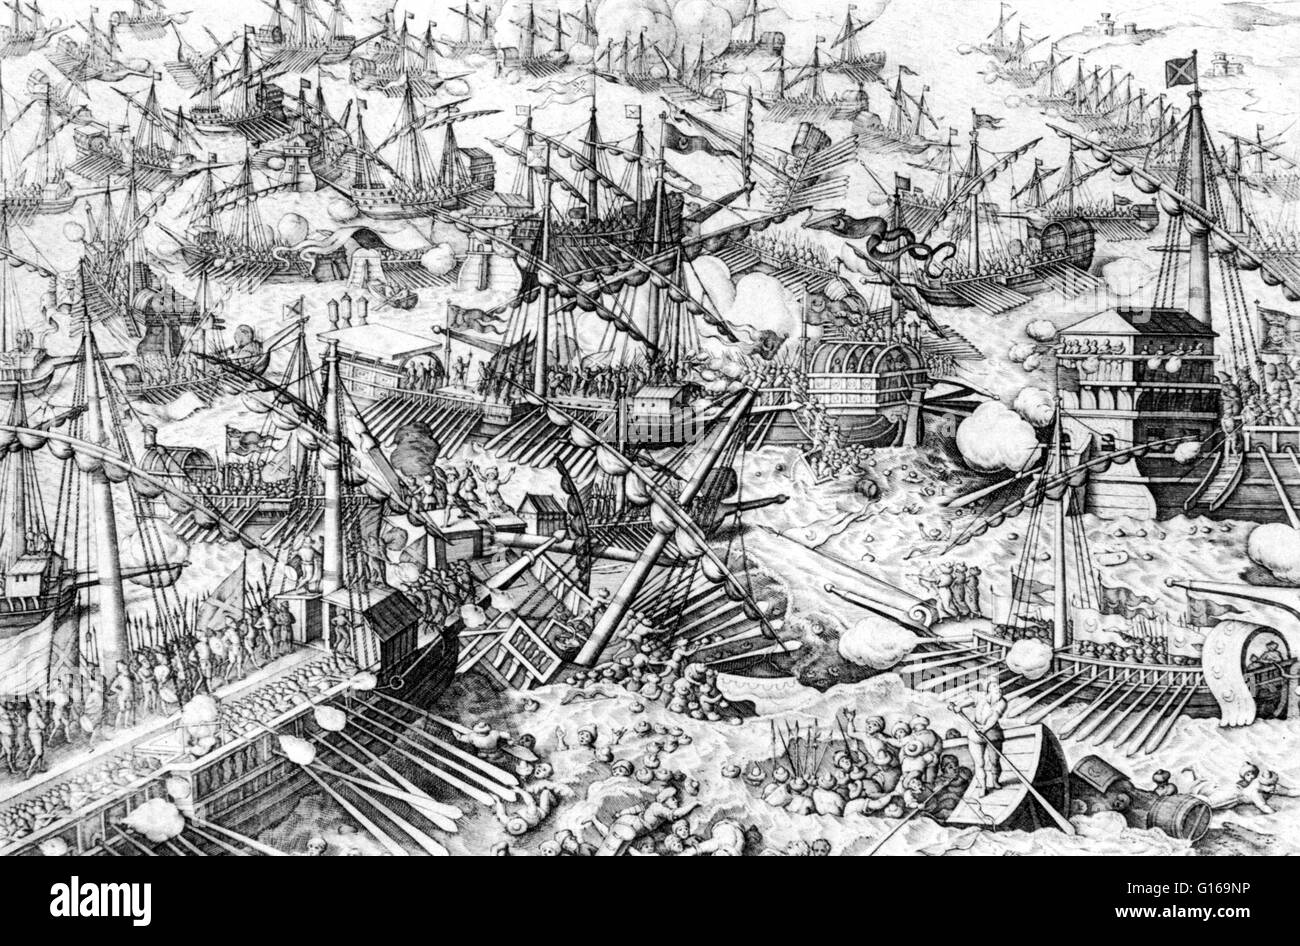 Die Seeschlacht von Lepanto fand am 7 Oktober 1571, als eine Flotte der Heiligen Liga, eine Koalition der Europäischen katholischen maritime Südstaaten, entscheidend die größte Flotte des Osmanischen Reiches in fünf Stunden besiegt des Kämpfens am nördlichen Rand des Golfs von Korinth aus Westgriechenland. Die osmanischen Truppen nach Westen segeln von der naval Station in Lepanto erfüllt die Heilige Liga-Kräfte, die von Messina gekommen war. Der Sieg der Heiligen Liga verhindert das Osmanische Reich erweitert weiter entlang der mediterranen Seite Europas. Lepanto war die letzte große Seeschlacht im Mittelmeer Stockfoto